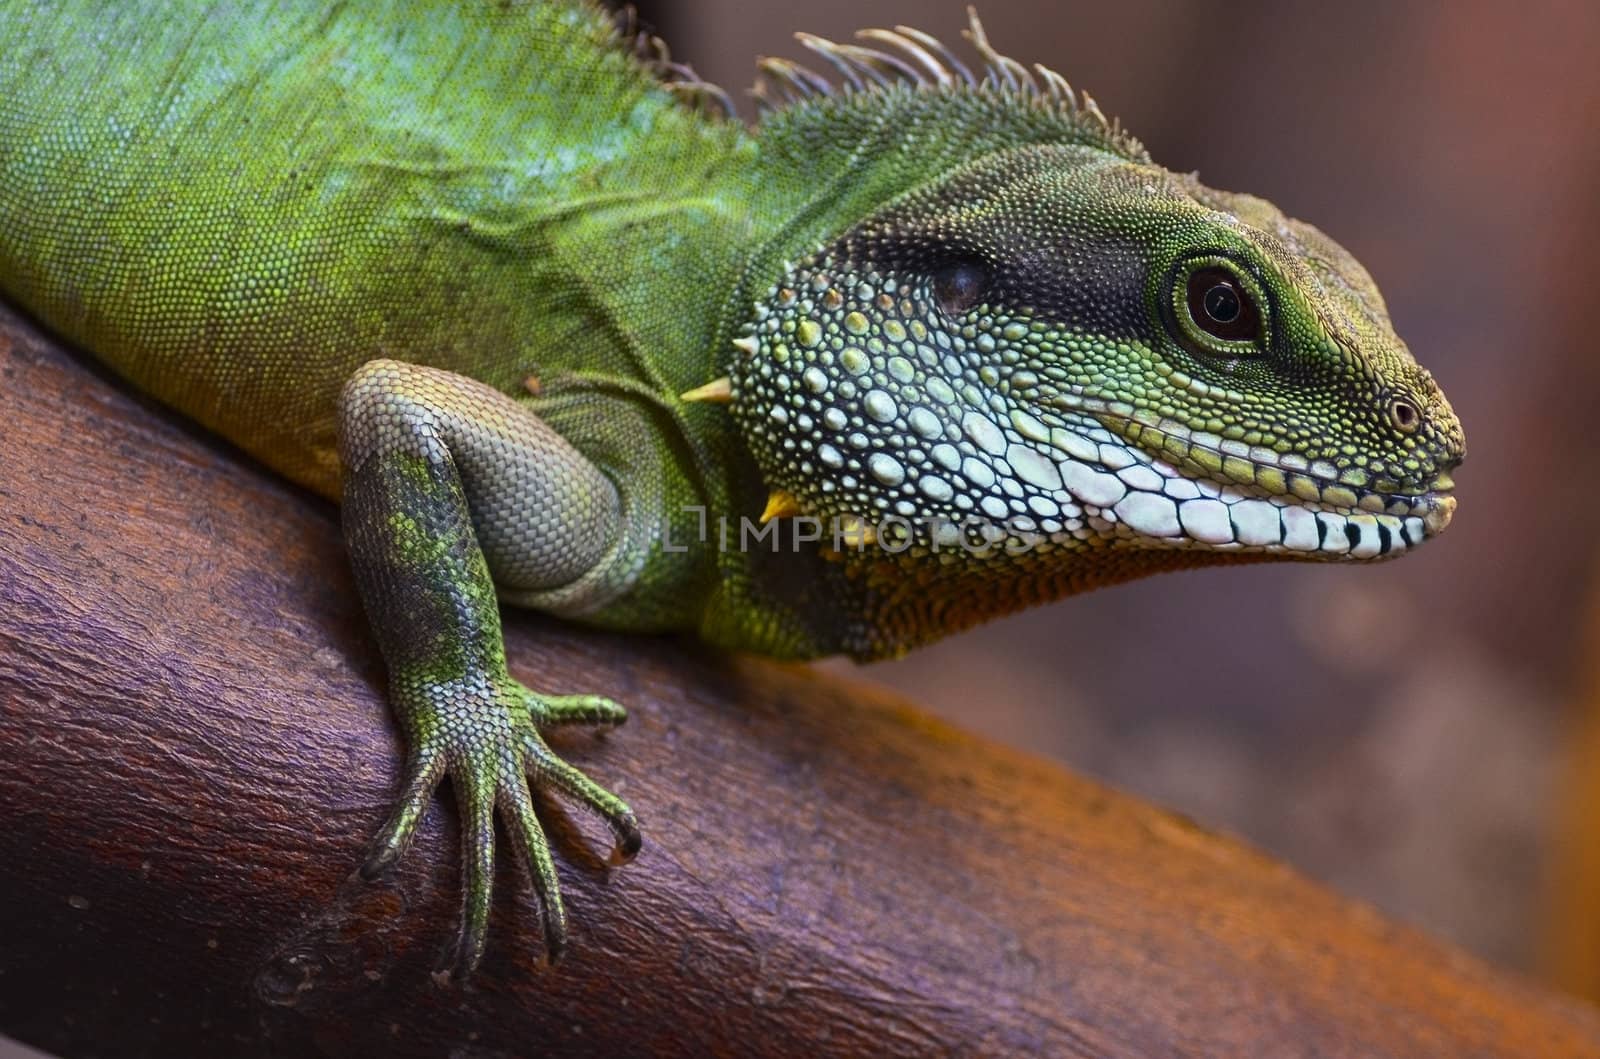 Lizard by Vectorex